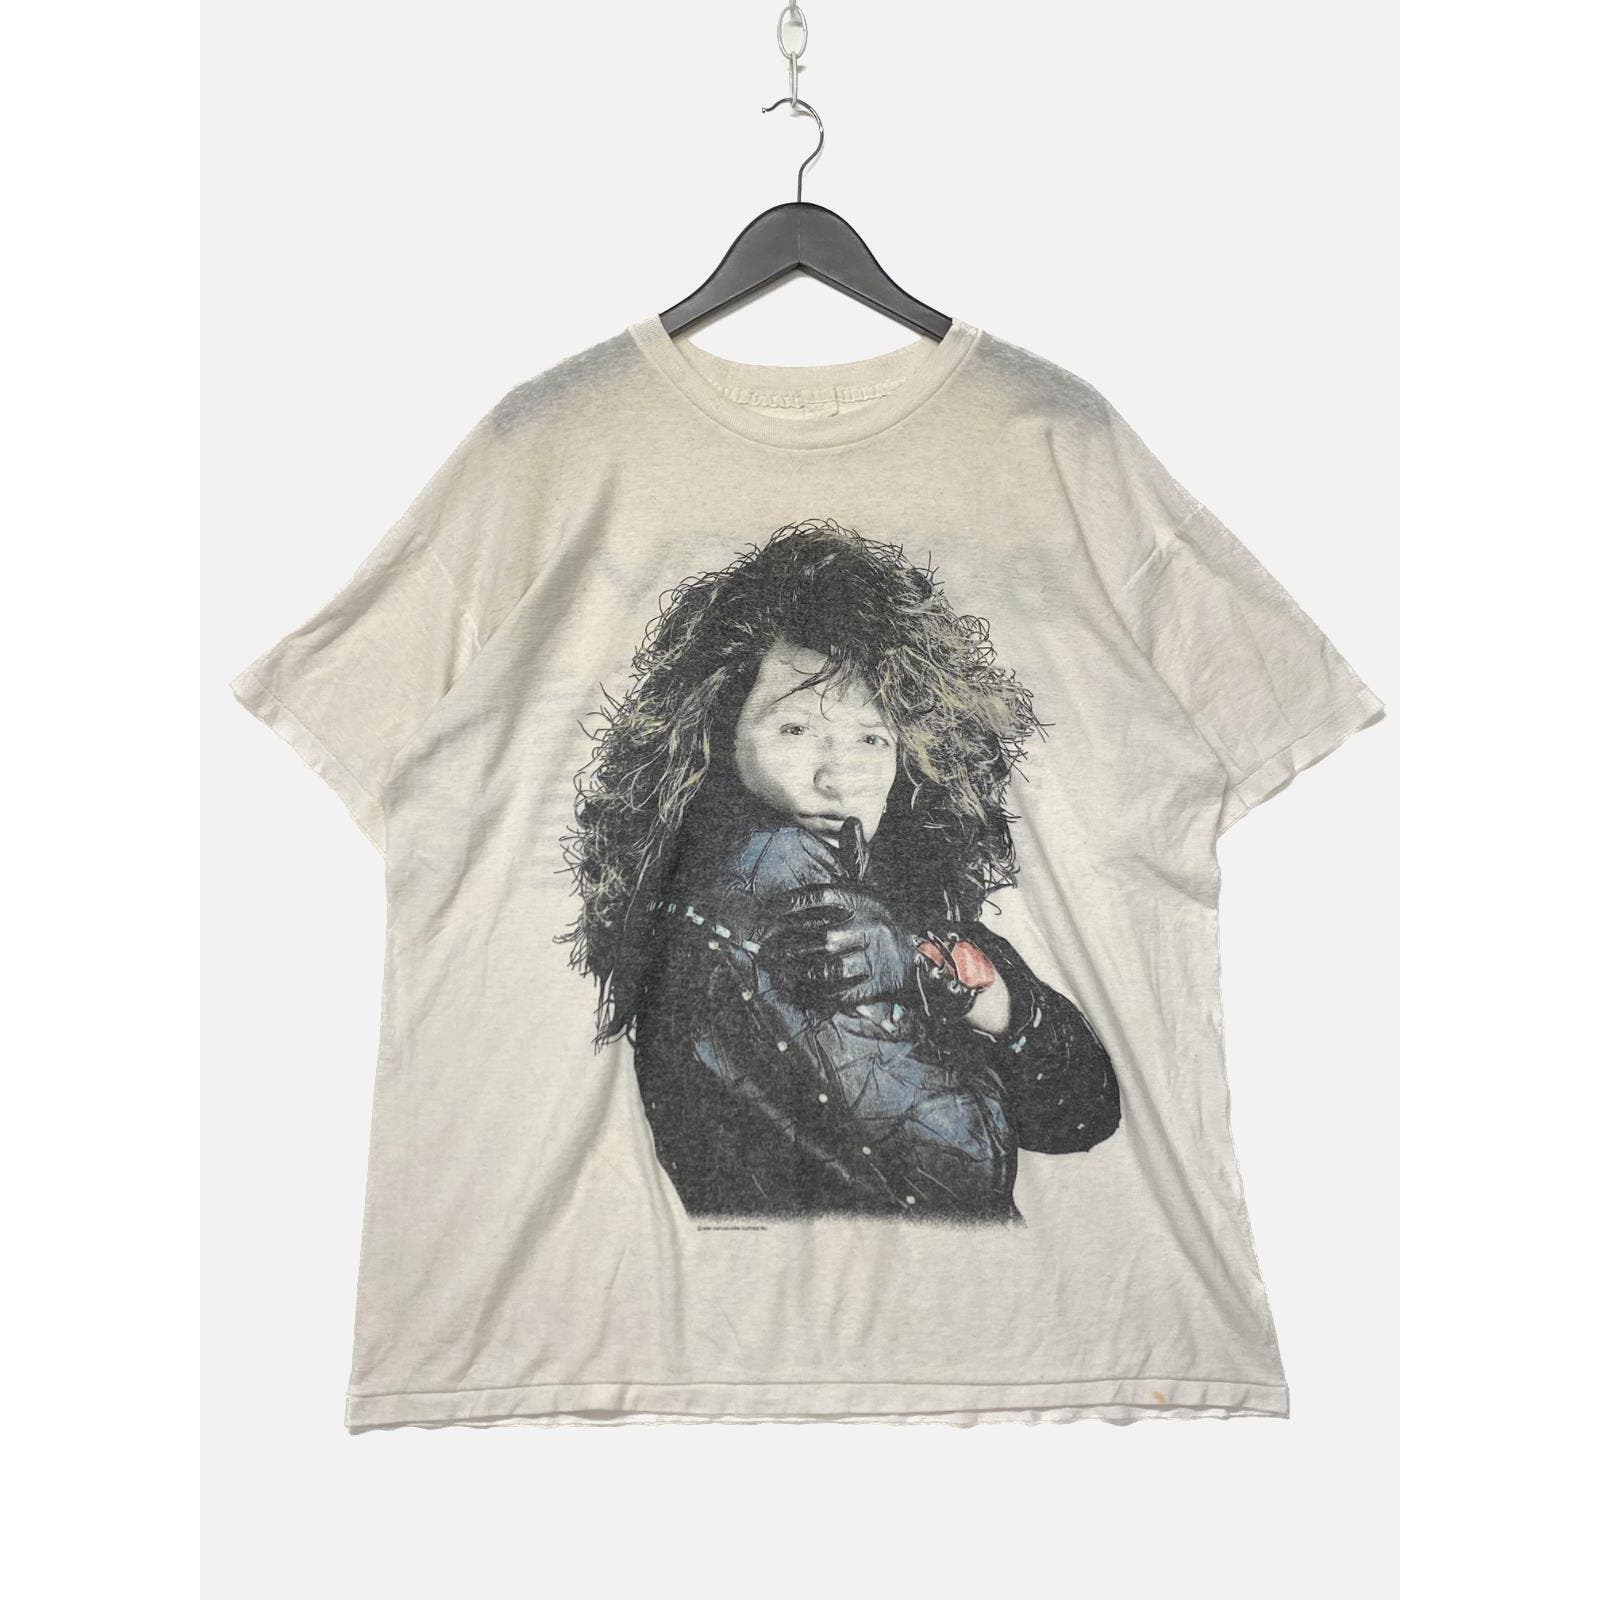 Vintage Bon Jovi Band 1988 Tour White T-shirt Size XL Band Tee Single Stitch